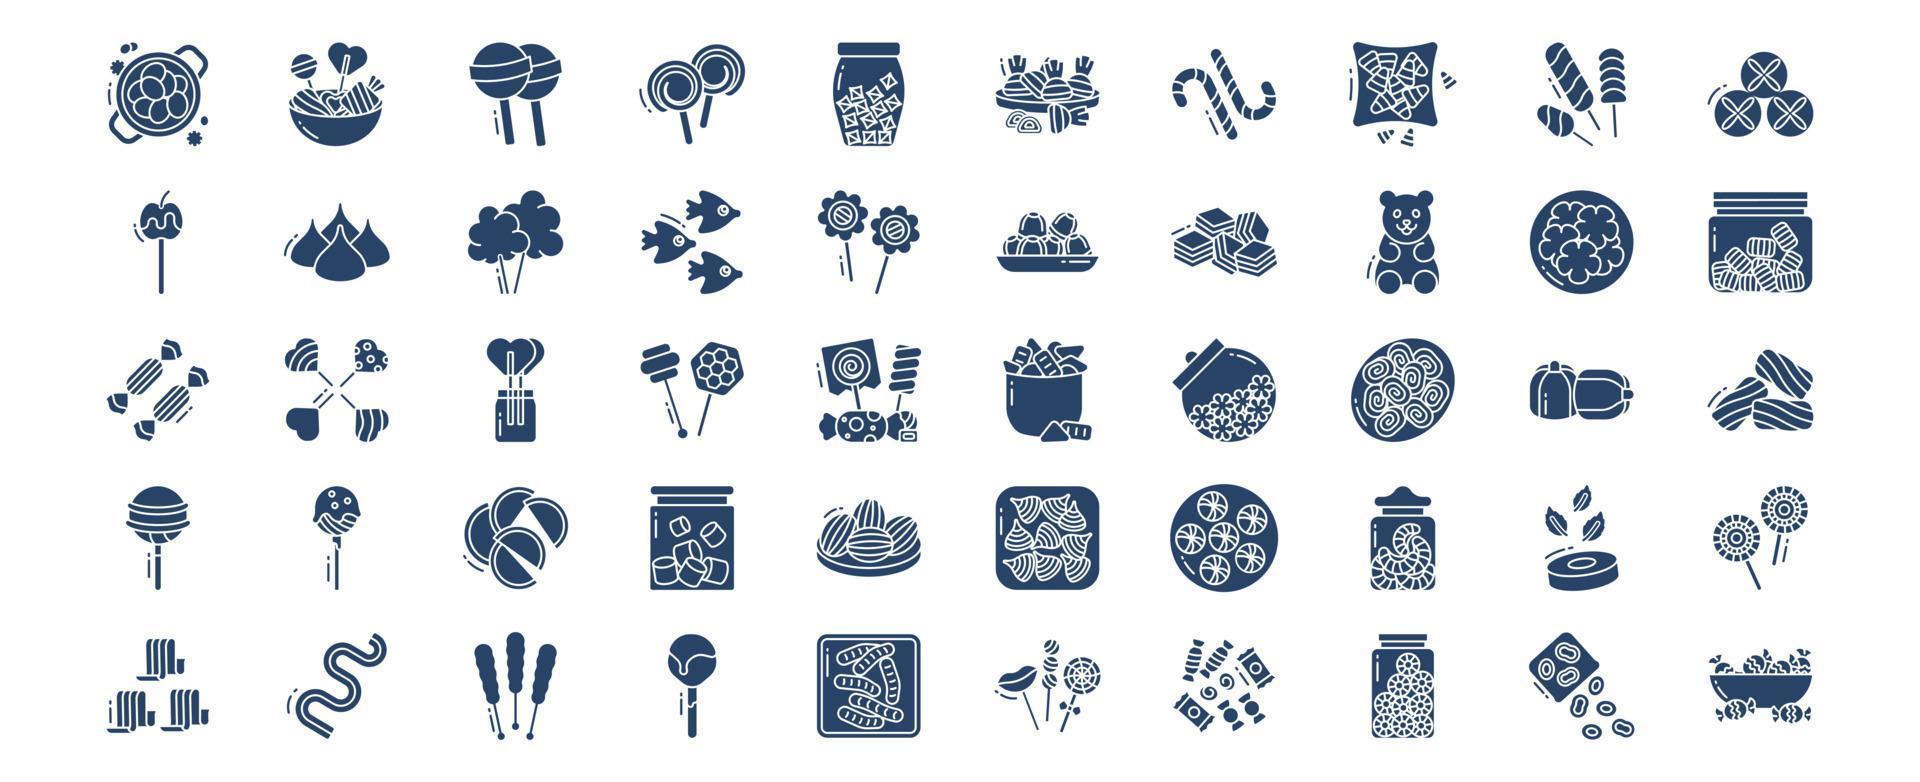 verzameling van pictogrammen verwant naar snoepjes en snoepgoed, inclusief pictogrammen Leuk vinden bal lolly, snoep en meer. vector illustraties, pixel perfect reeks